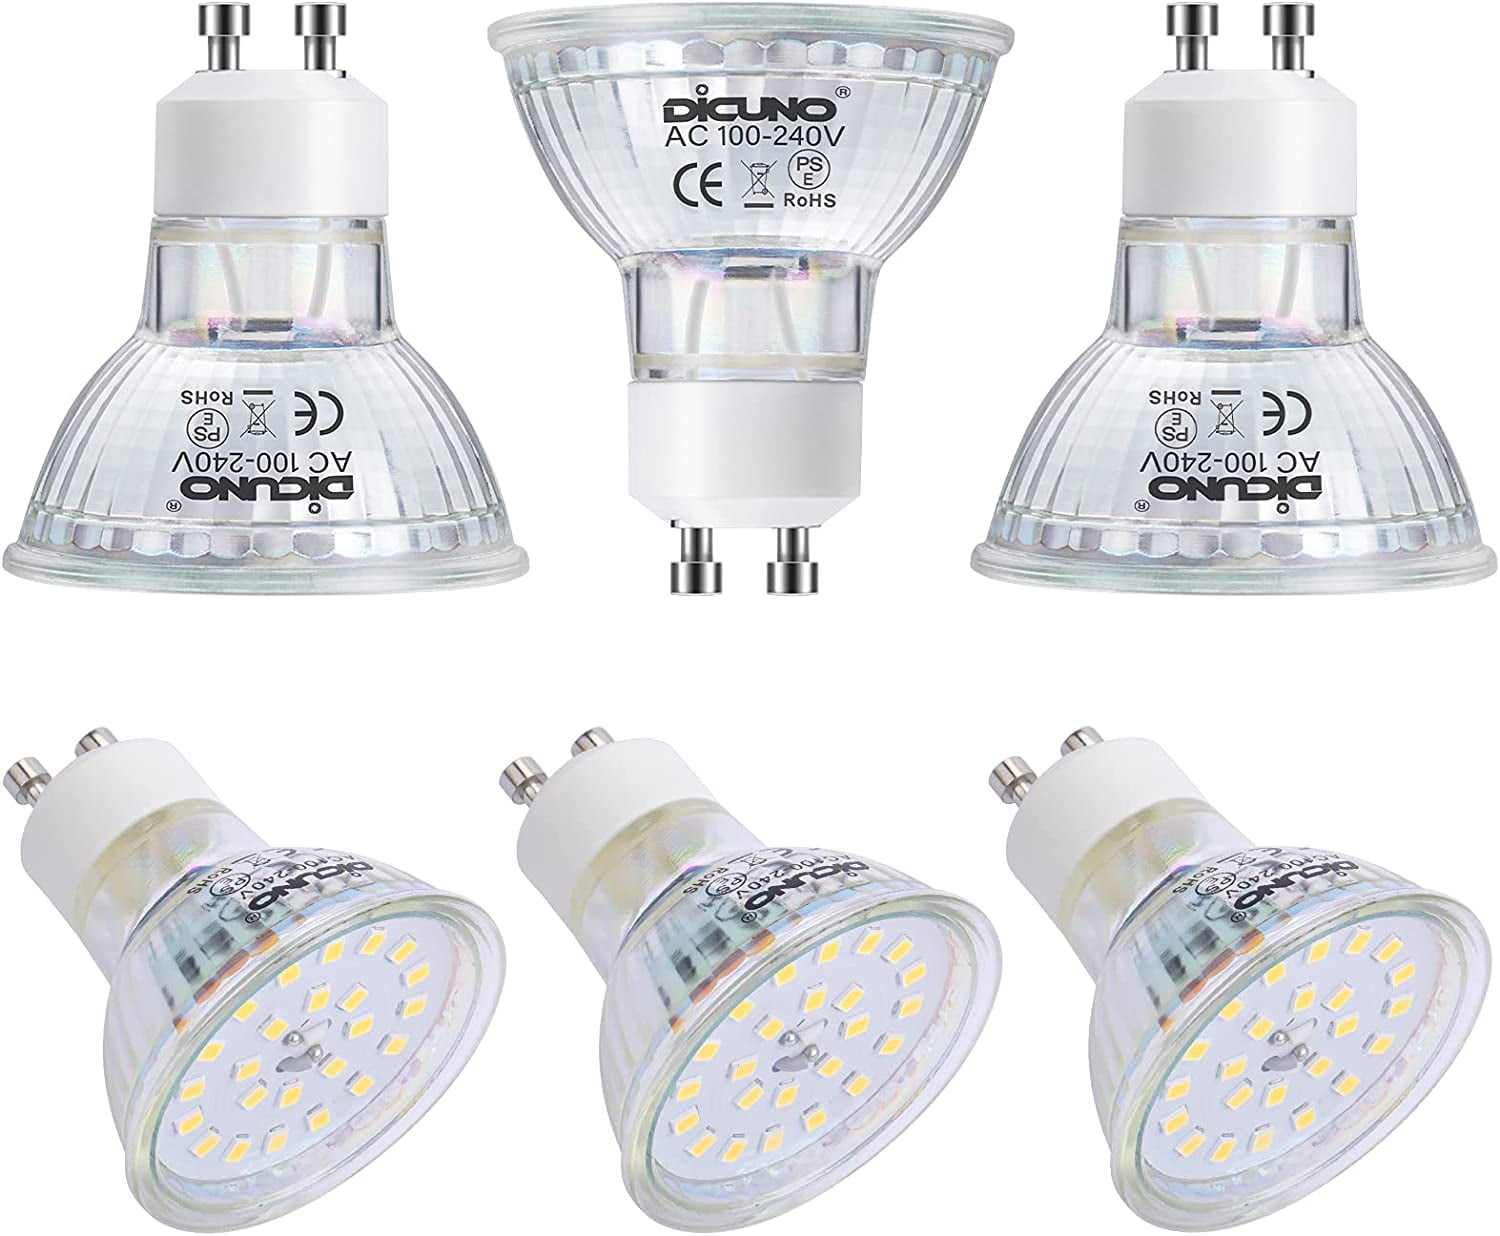 GU10 LED Light Bulbs, 6W 60W Halogen Replacement, Bright Daylight White 5000K, 700LM, Full Glass Cover 120 Degree 120V MR16 GU10 LED Non-dimmable, Spotlight Track Lighting, 6-Pack Walmart.com